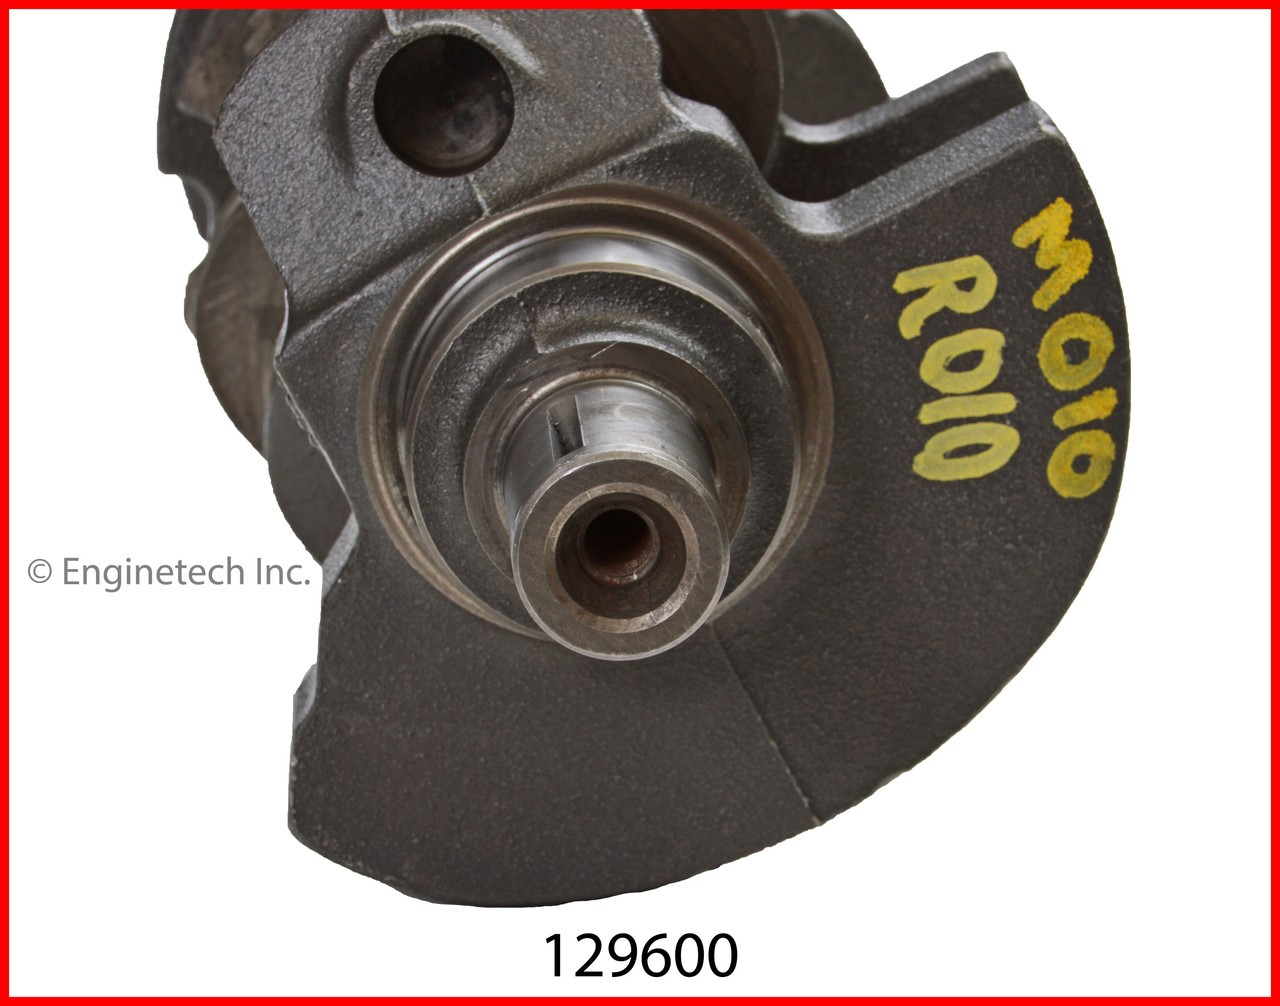 Crankshaft Kit - 2002 GMC Sierra 1500 4.3L (129600.H74)